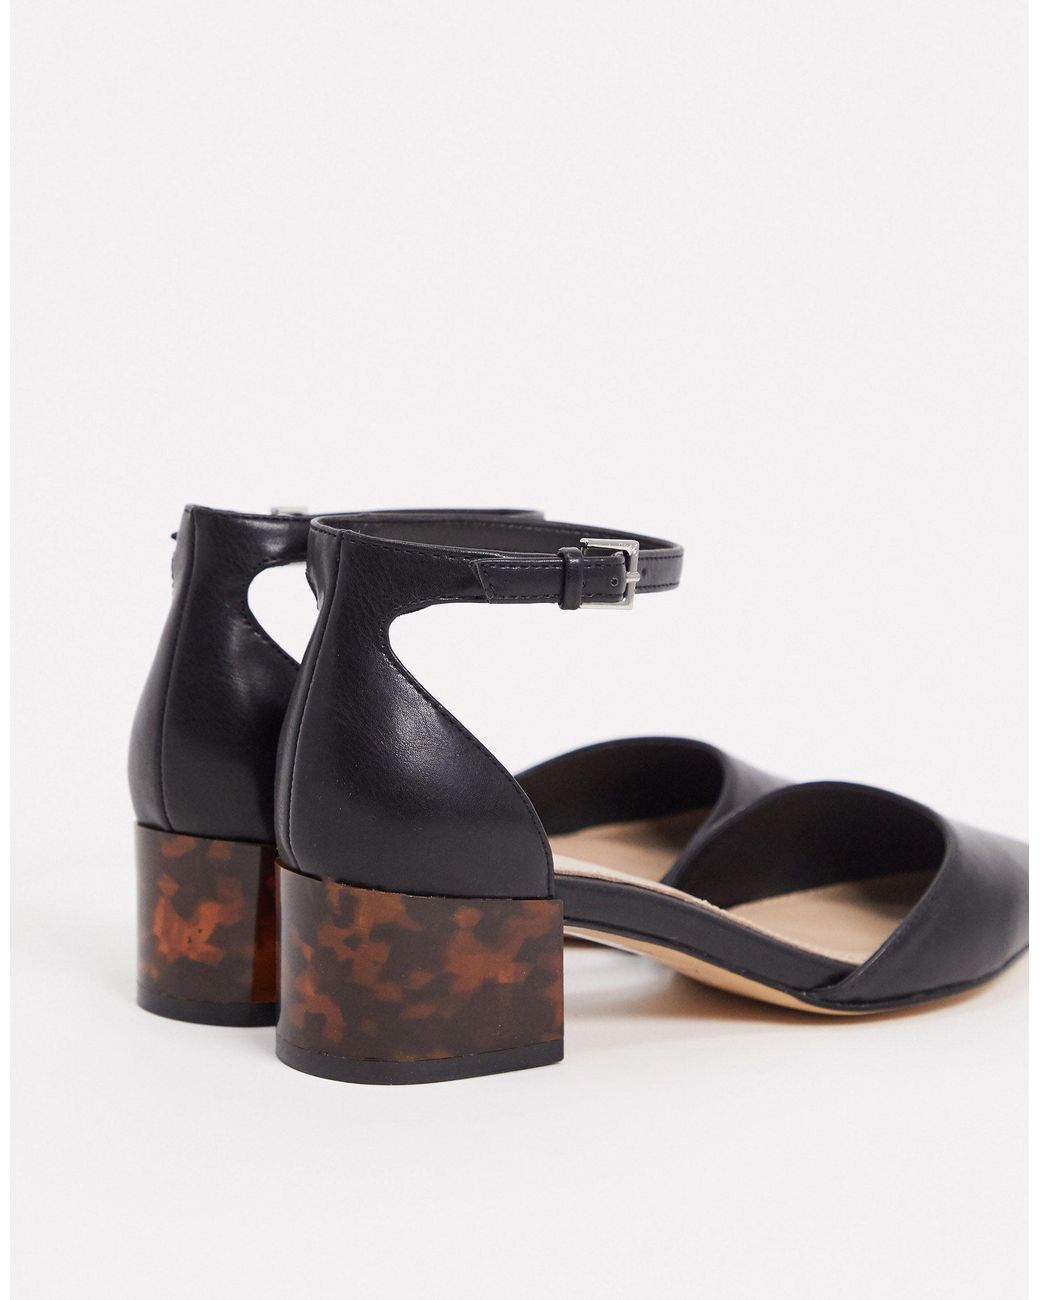 ALDO Zulian Mid Block Shoe in Black | Lyst Australia